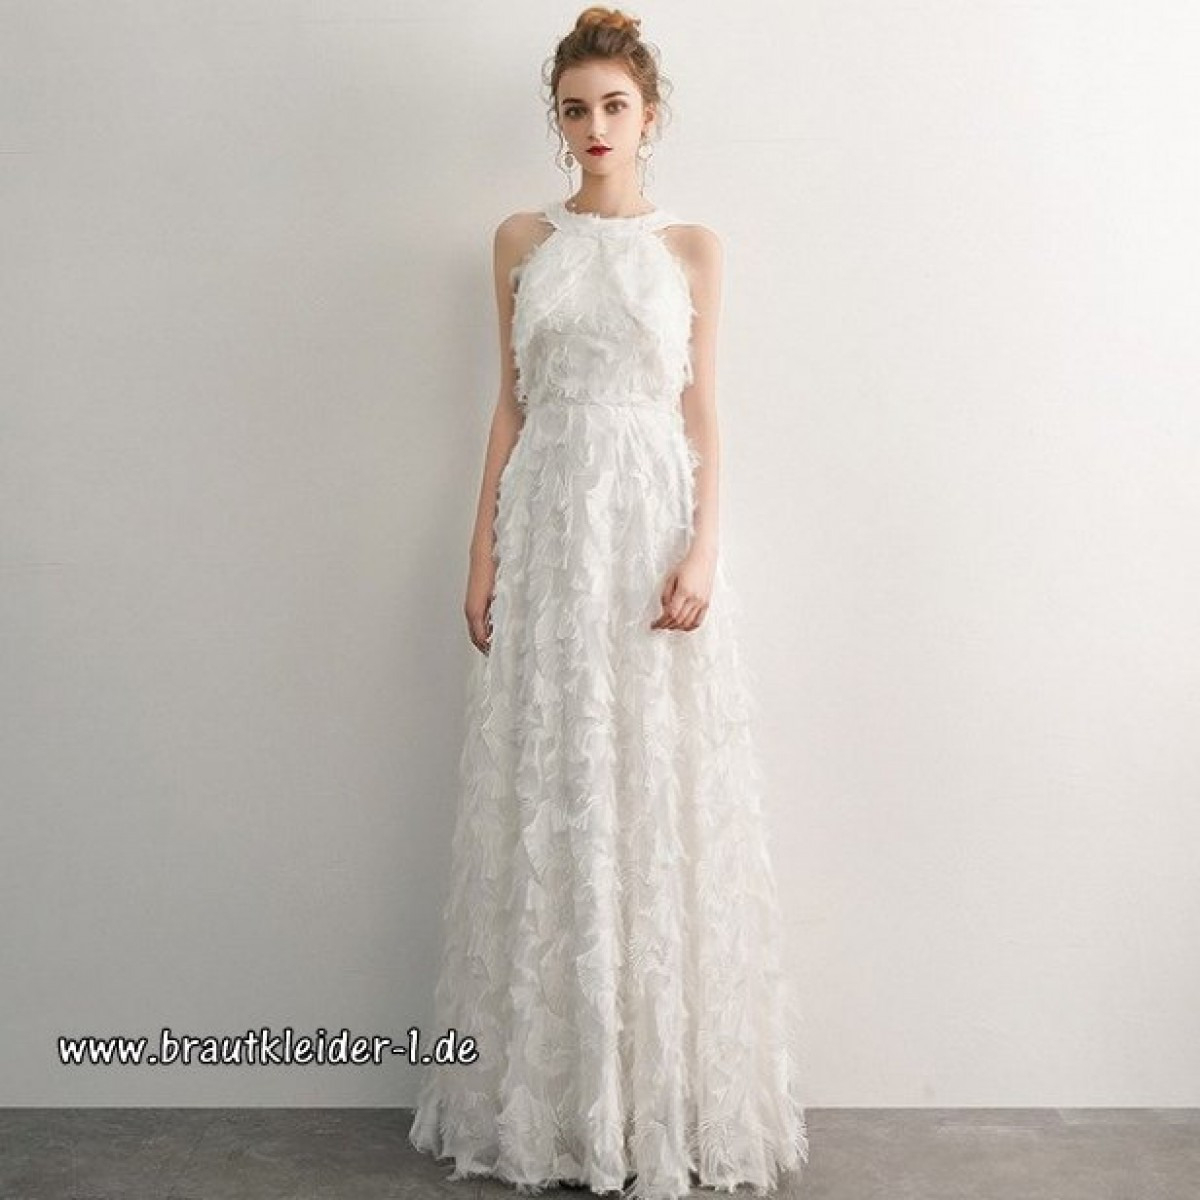 13 Einfach Kleid Lang Weiß Bester PreisDesigner Luxurius Kleid Lang Weiß Design